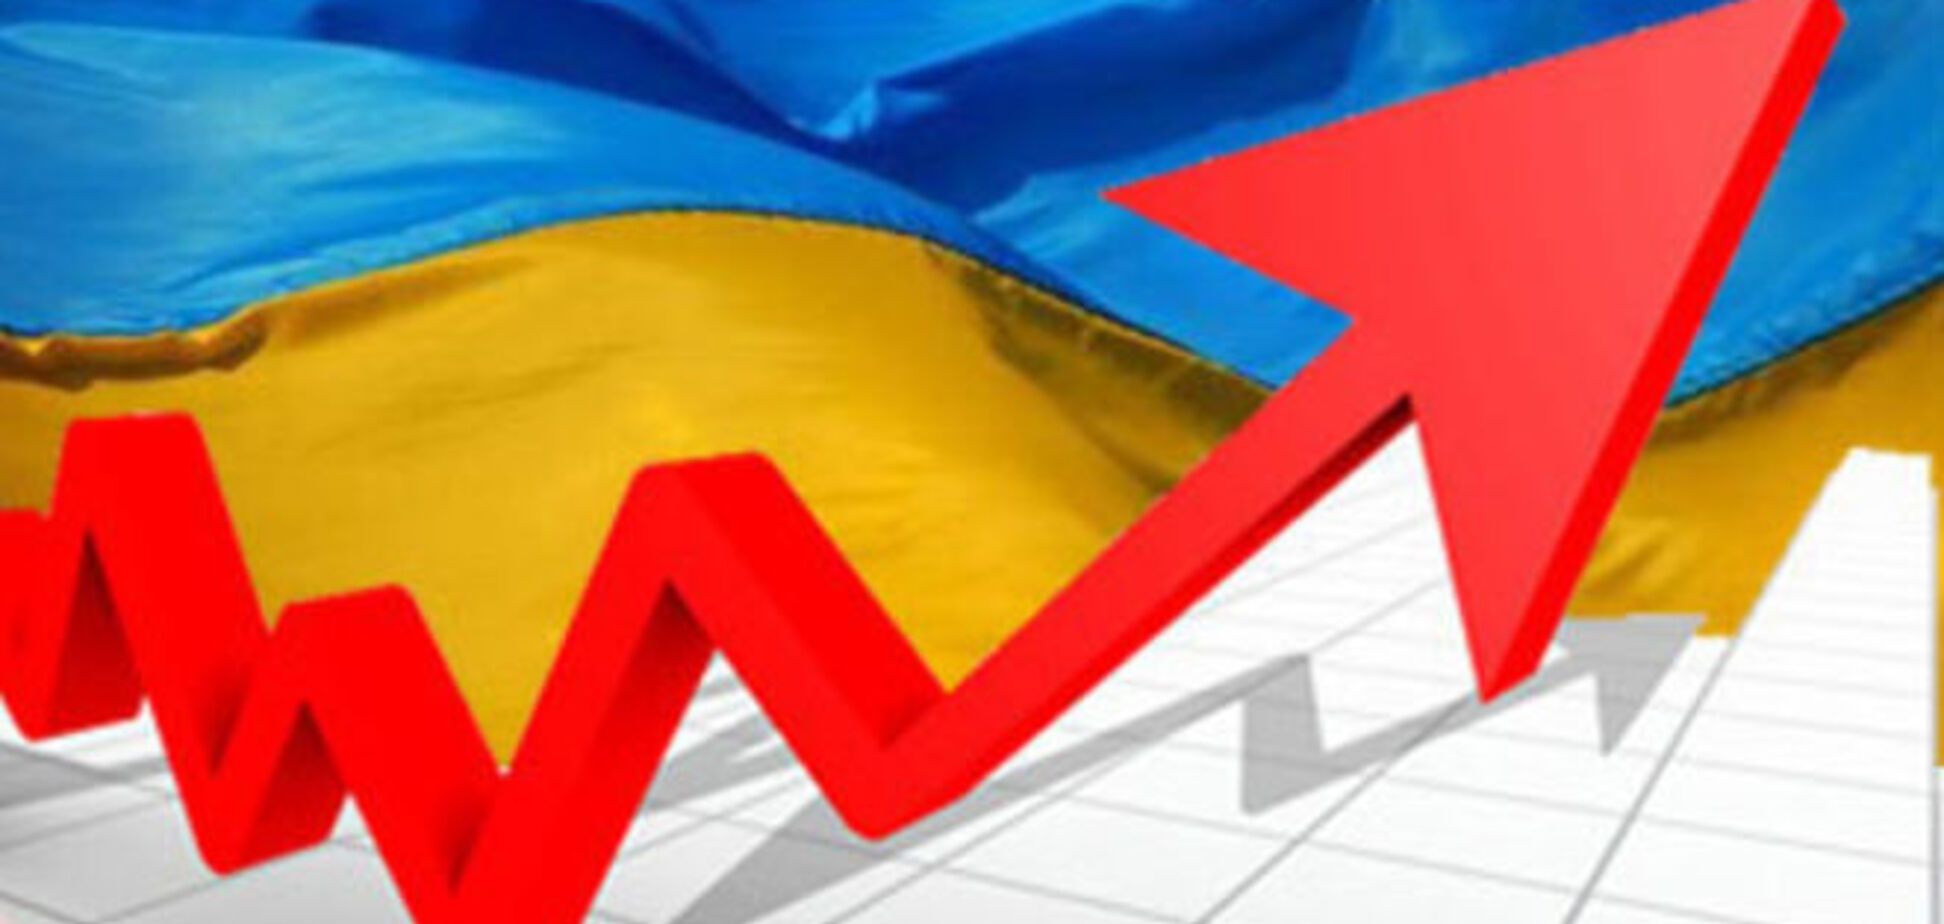 Еврокомиссар рассказал, что необходимо для роста экономики Украины